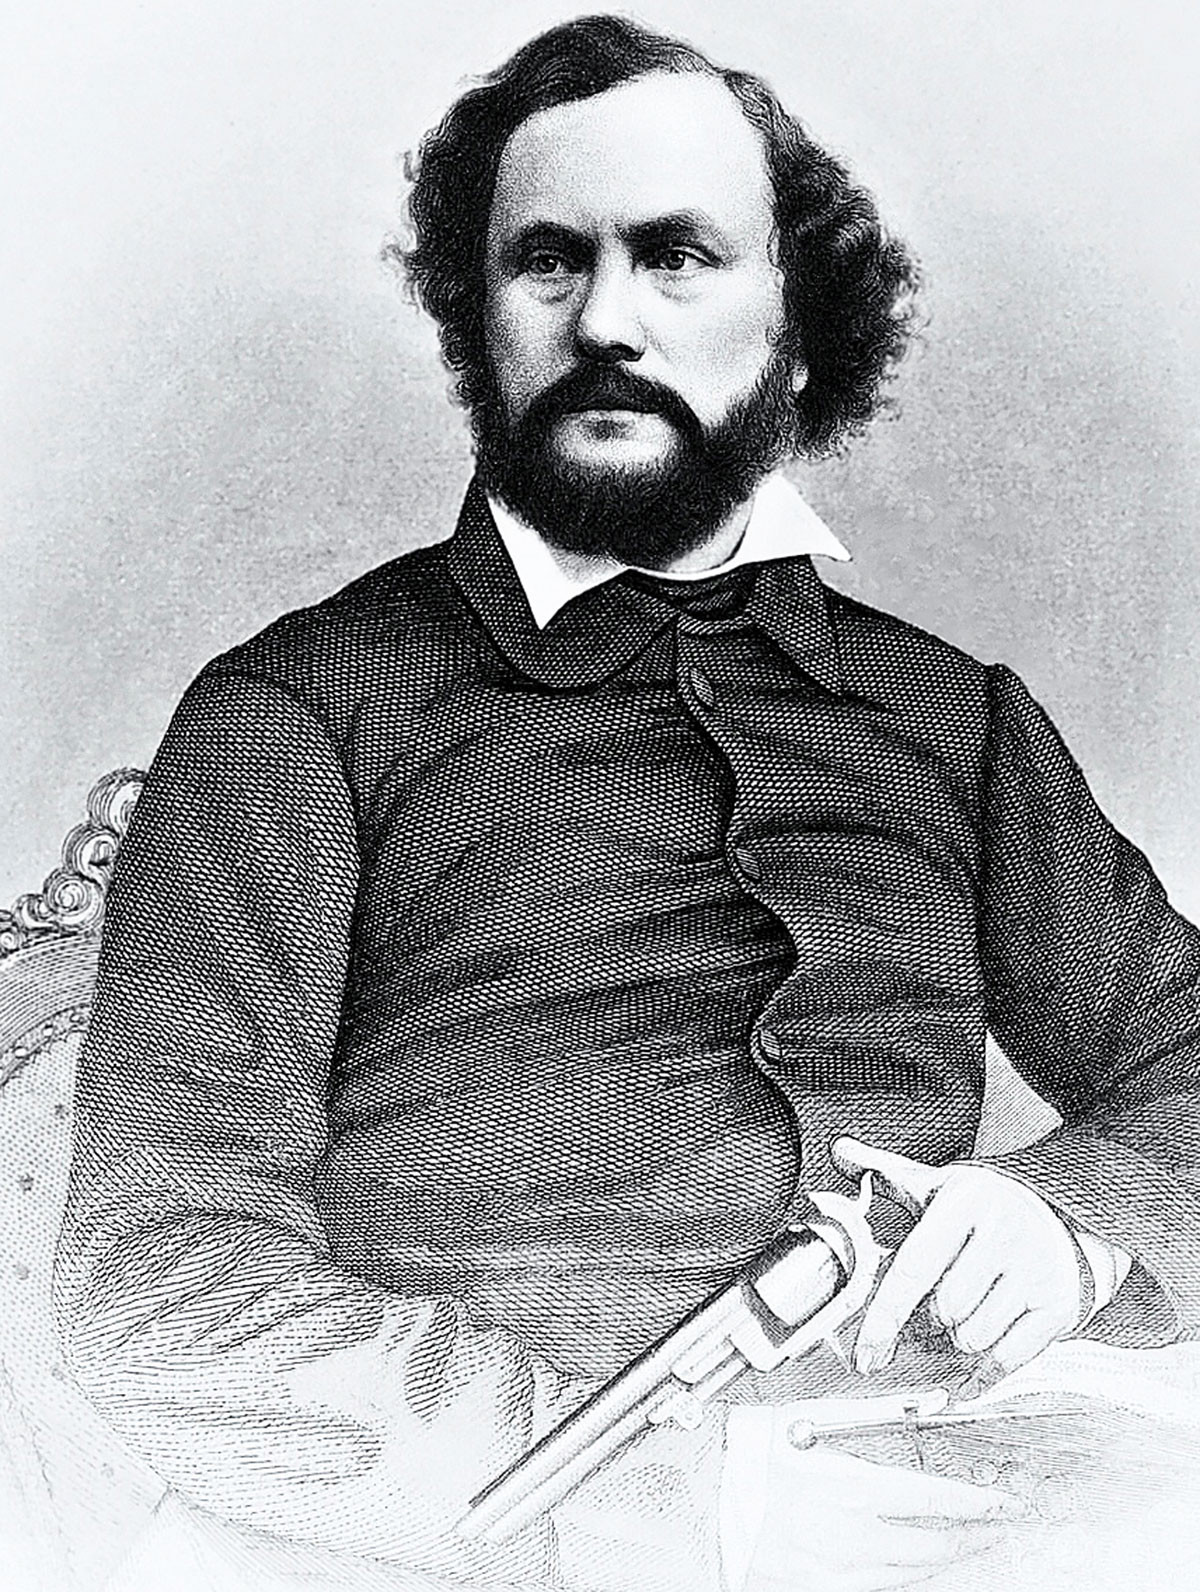 Samuel Colt a világ leghíresebb pisztolyának feltalálója volt